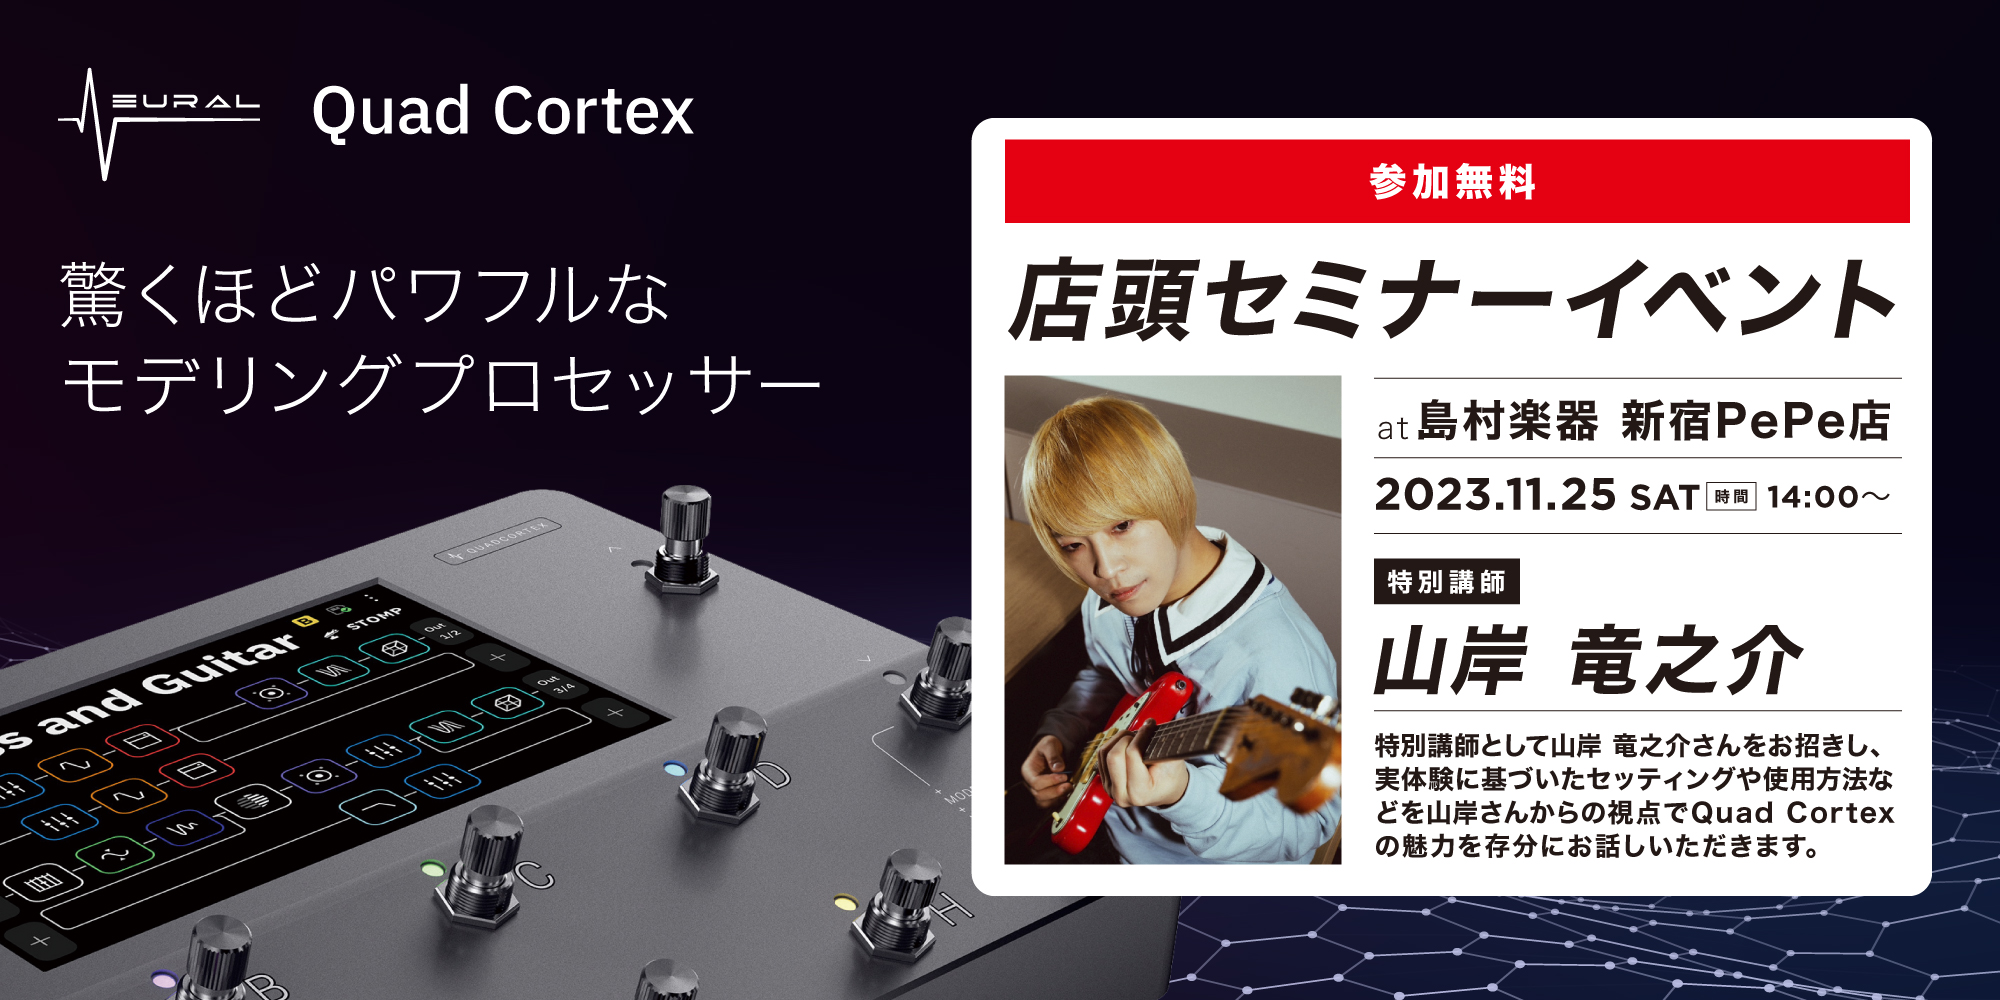 【イベント情報】Quad Cortex × 山岸竜之介 特別セミナー in 島村楽器 新宿PePe店